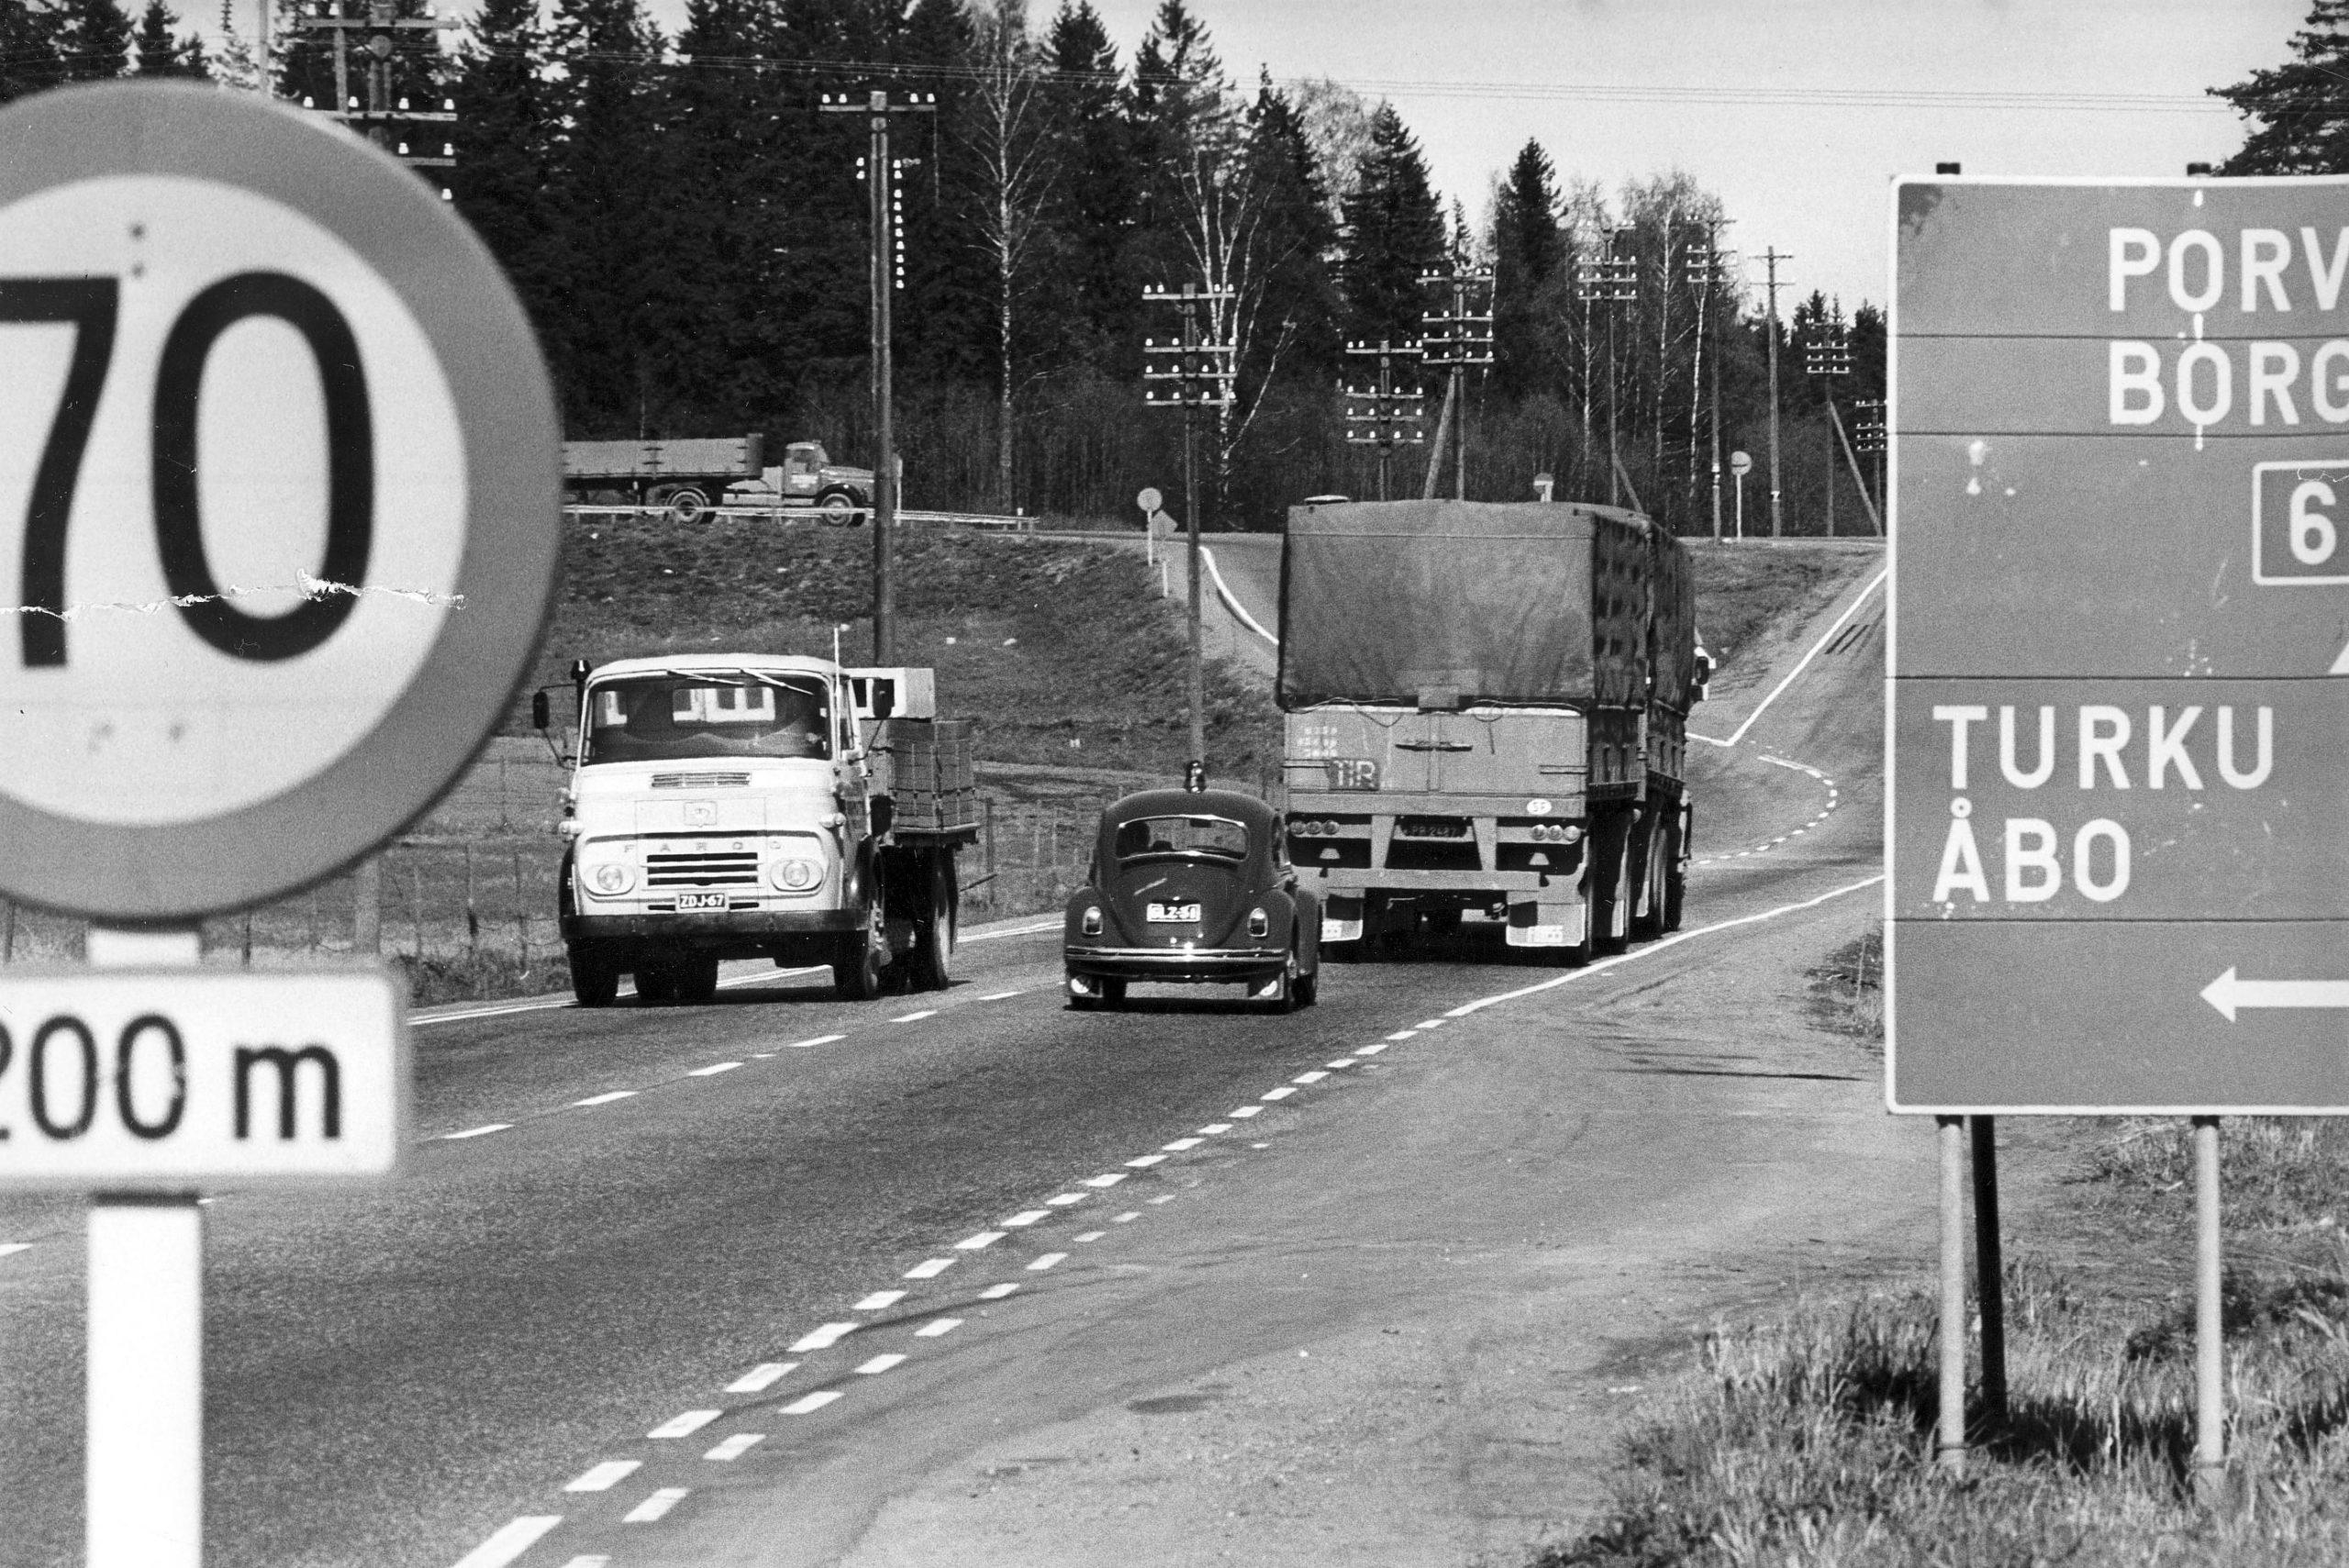 70 km nopeusrajoitus liikennemerkki Porvoontiellä vuonna 1969. Porvoontiellä kokeiltiin suositeltavaa ohjenopeutta 70 km/h tien alkuosalla Helsinginkaupungin rajasta lukien. Porvoontie oli yksi vaarallisimpia tieosuuksia 1960-luvulla. (Liikenneturva - Mobilia)